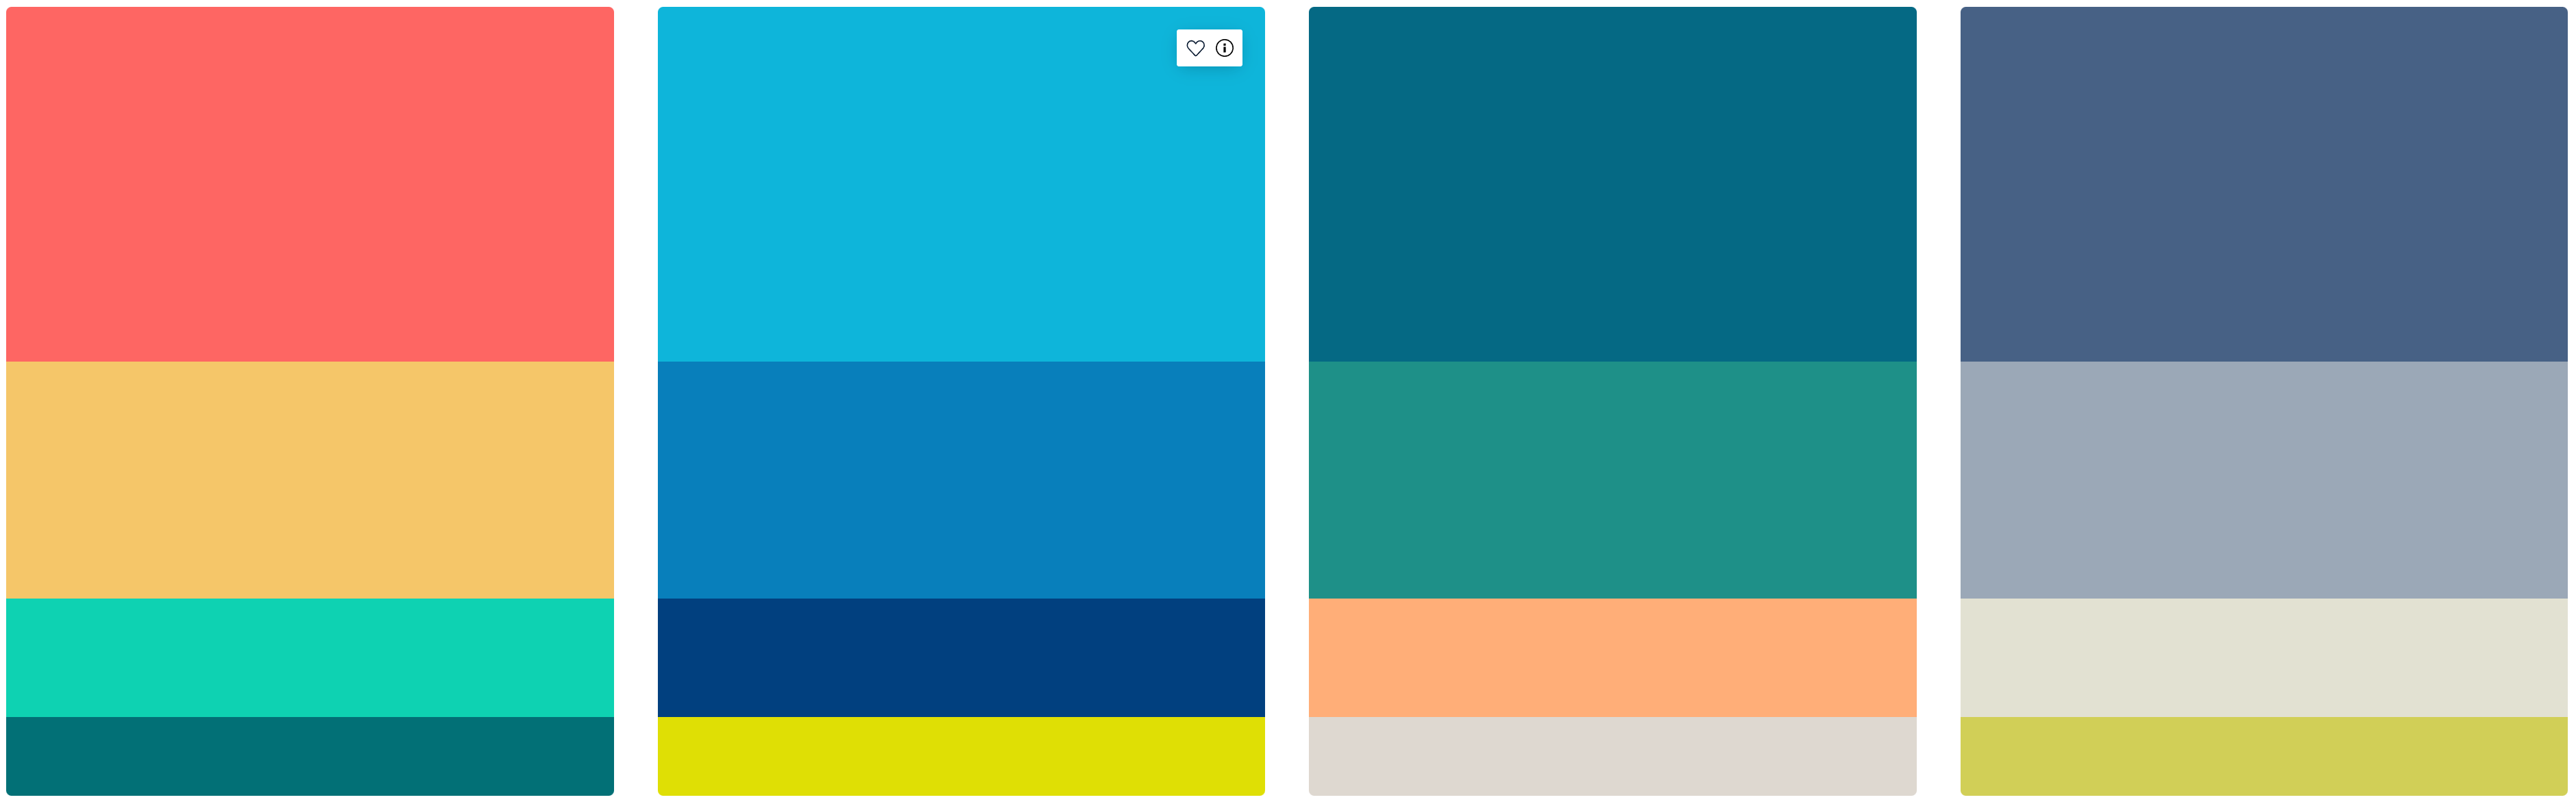 Screenshot von vier Farbpaletten mit jeweils vier Farben in unterschiedlichen Farbtönen; die Farben sind in Rechtecken untereinander angeordnet, dabei nimmt die Höhe der Rechtecke nach unten hin ab